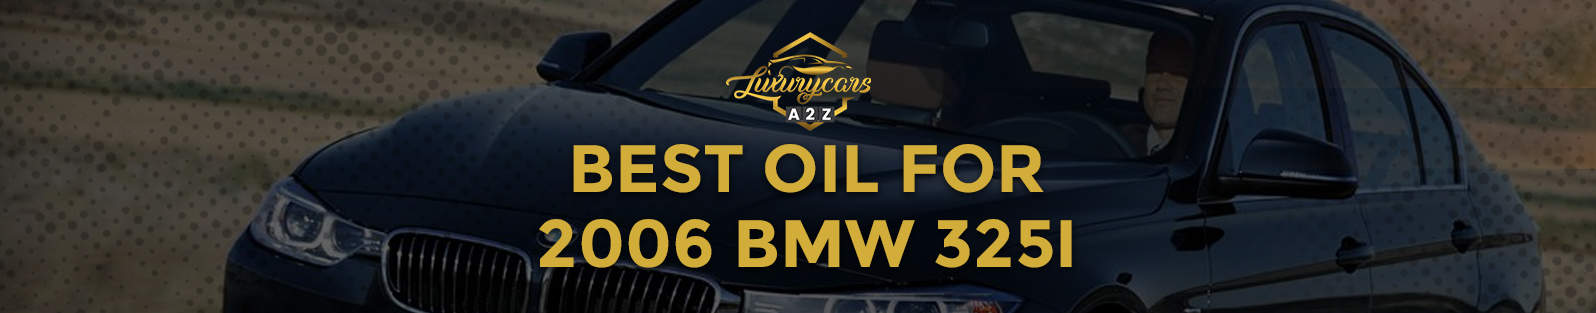 La meilleure huile pour la BMW 325i 2006